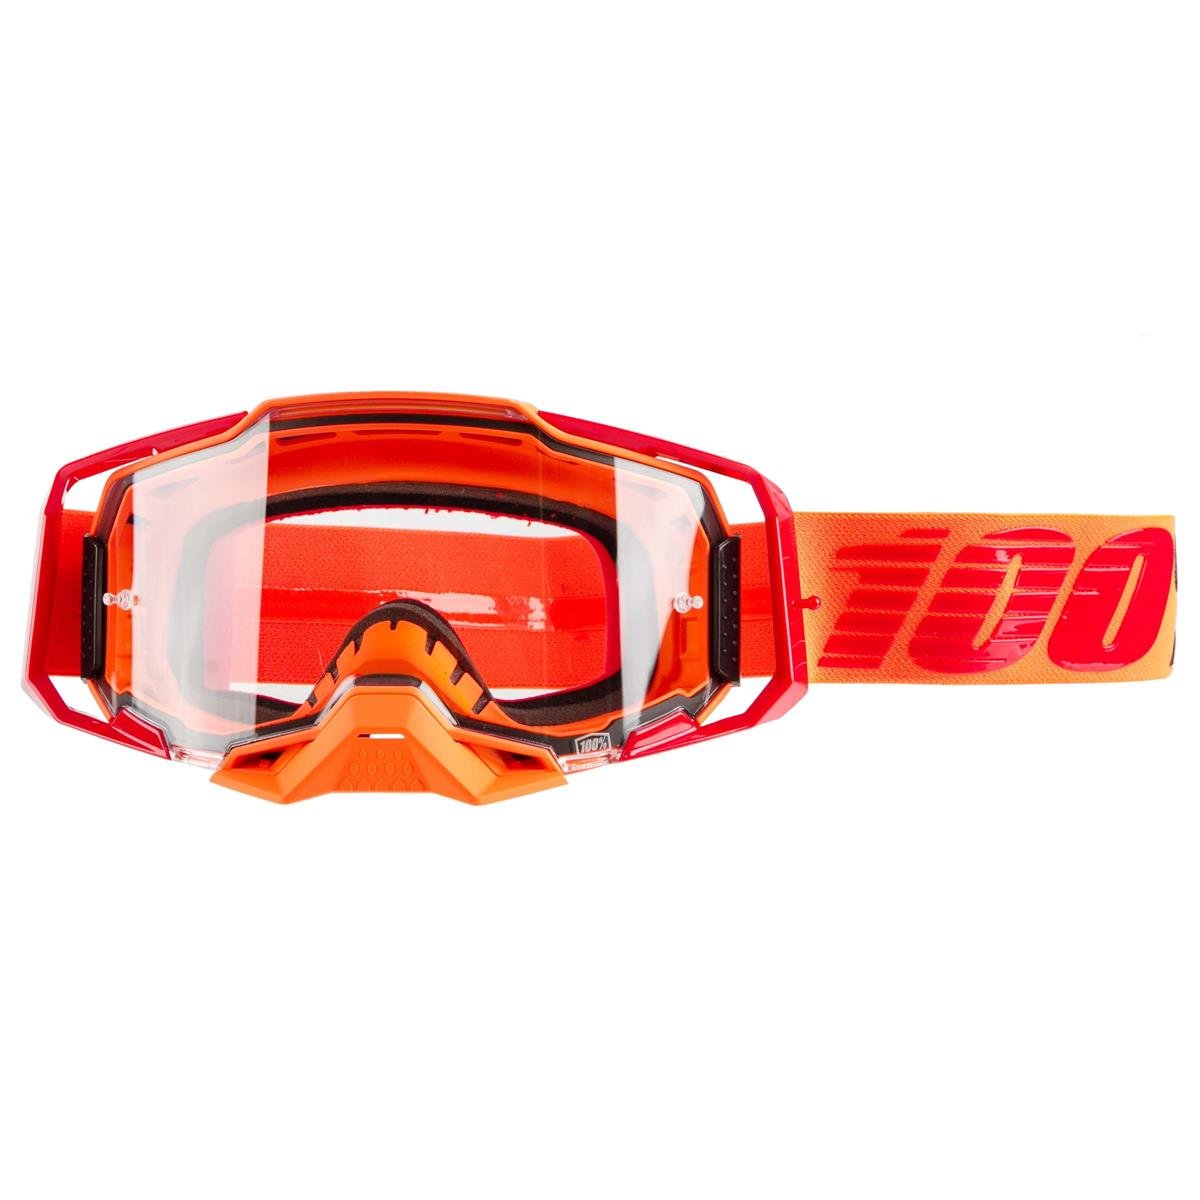 100% Goggles Armega Litkit - Clear, Anti Fog